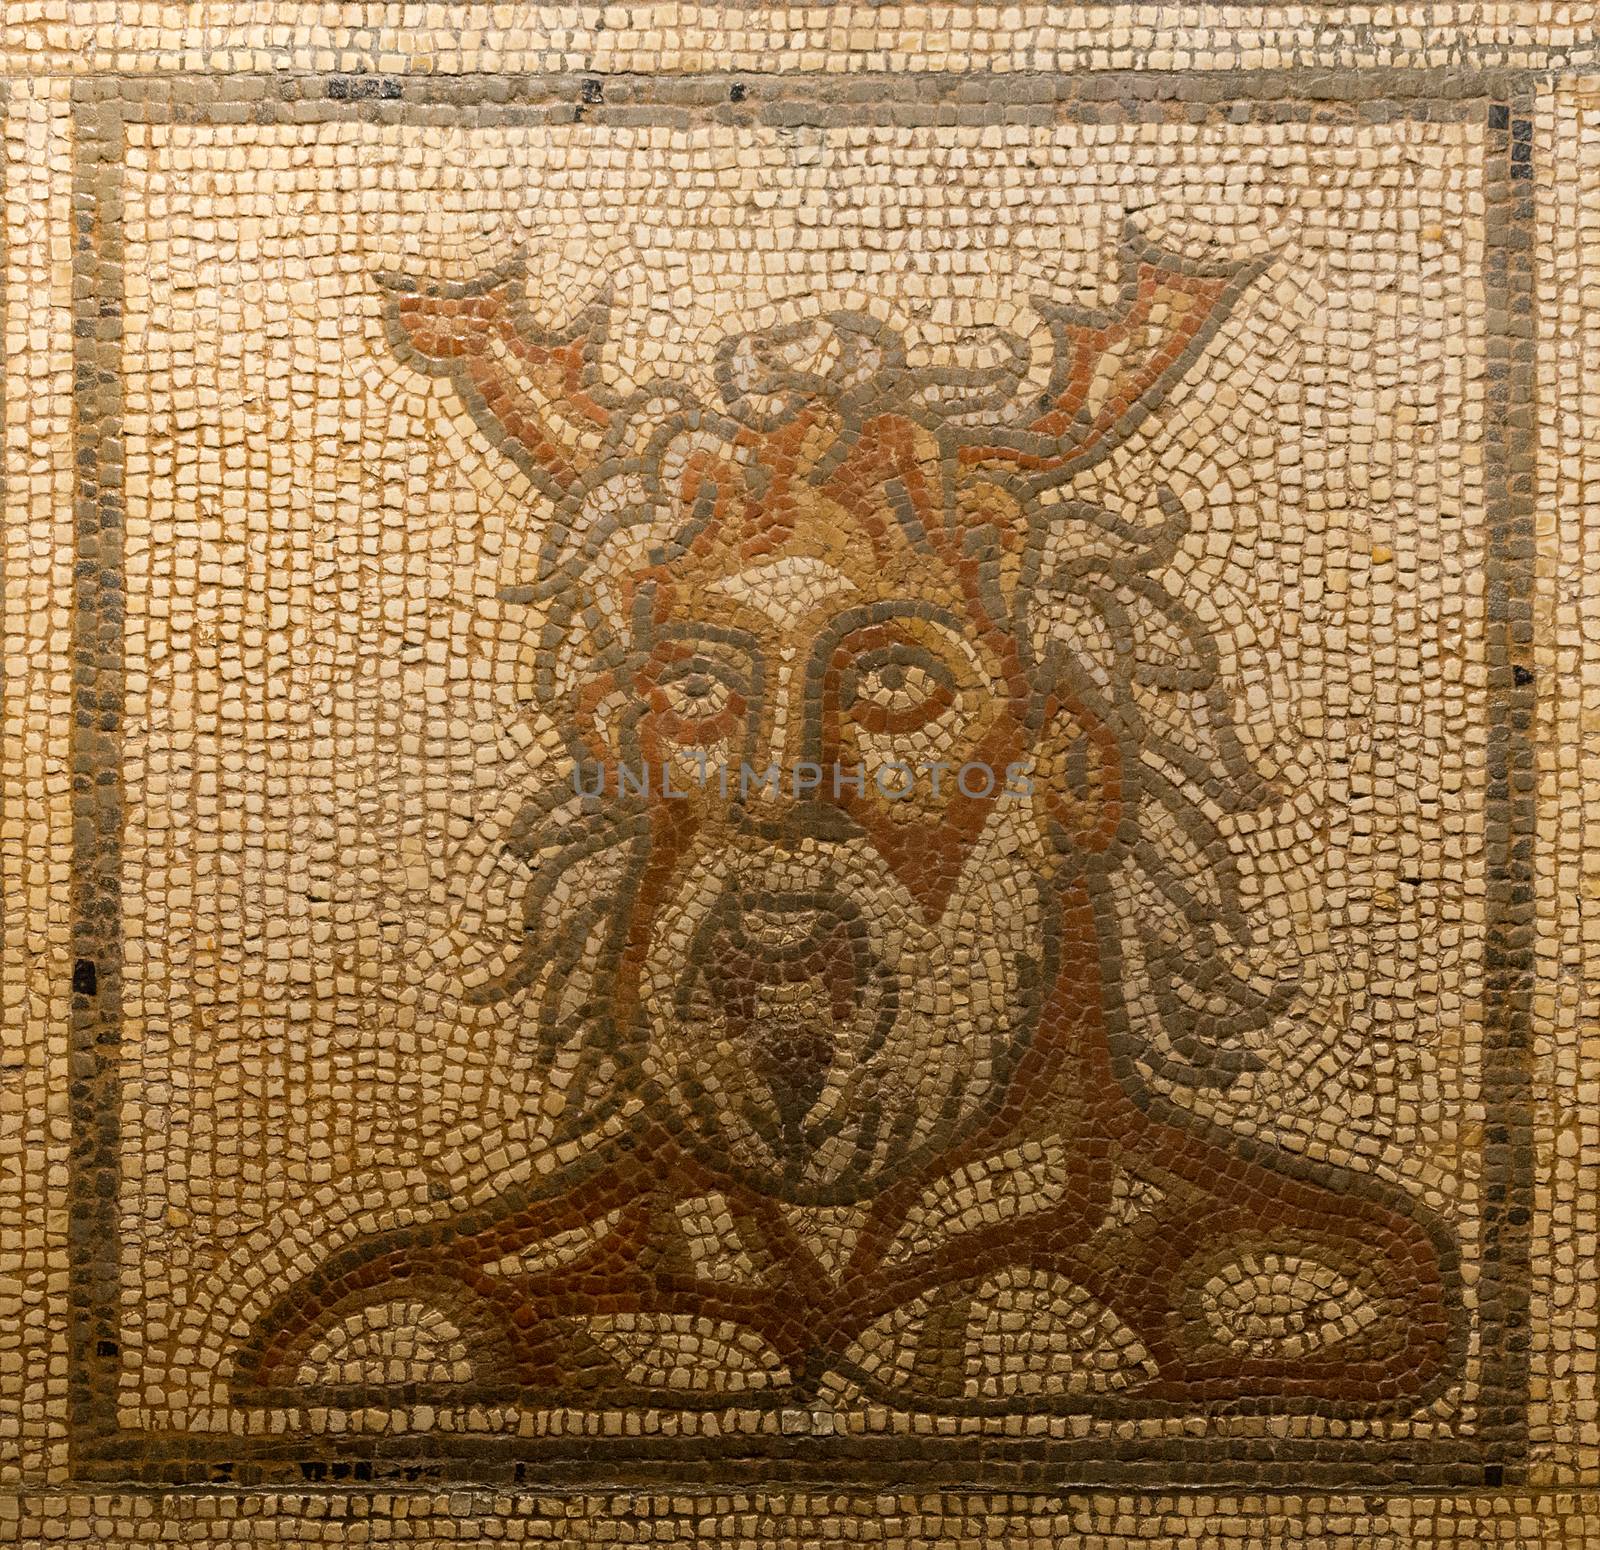 Mosaic of Oceanus by TimAwe